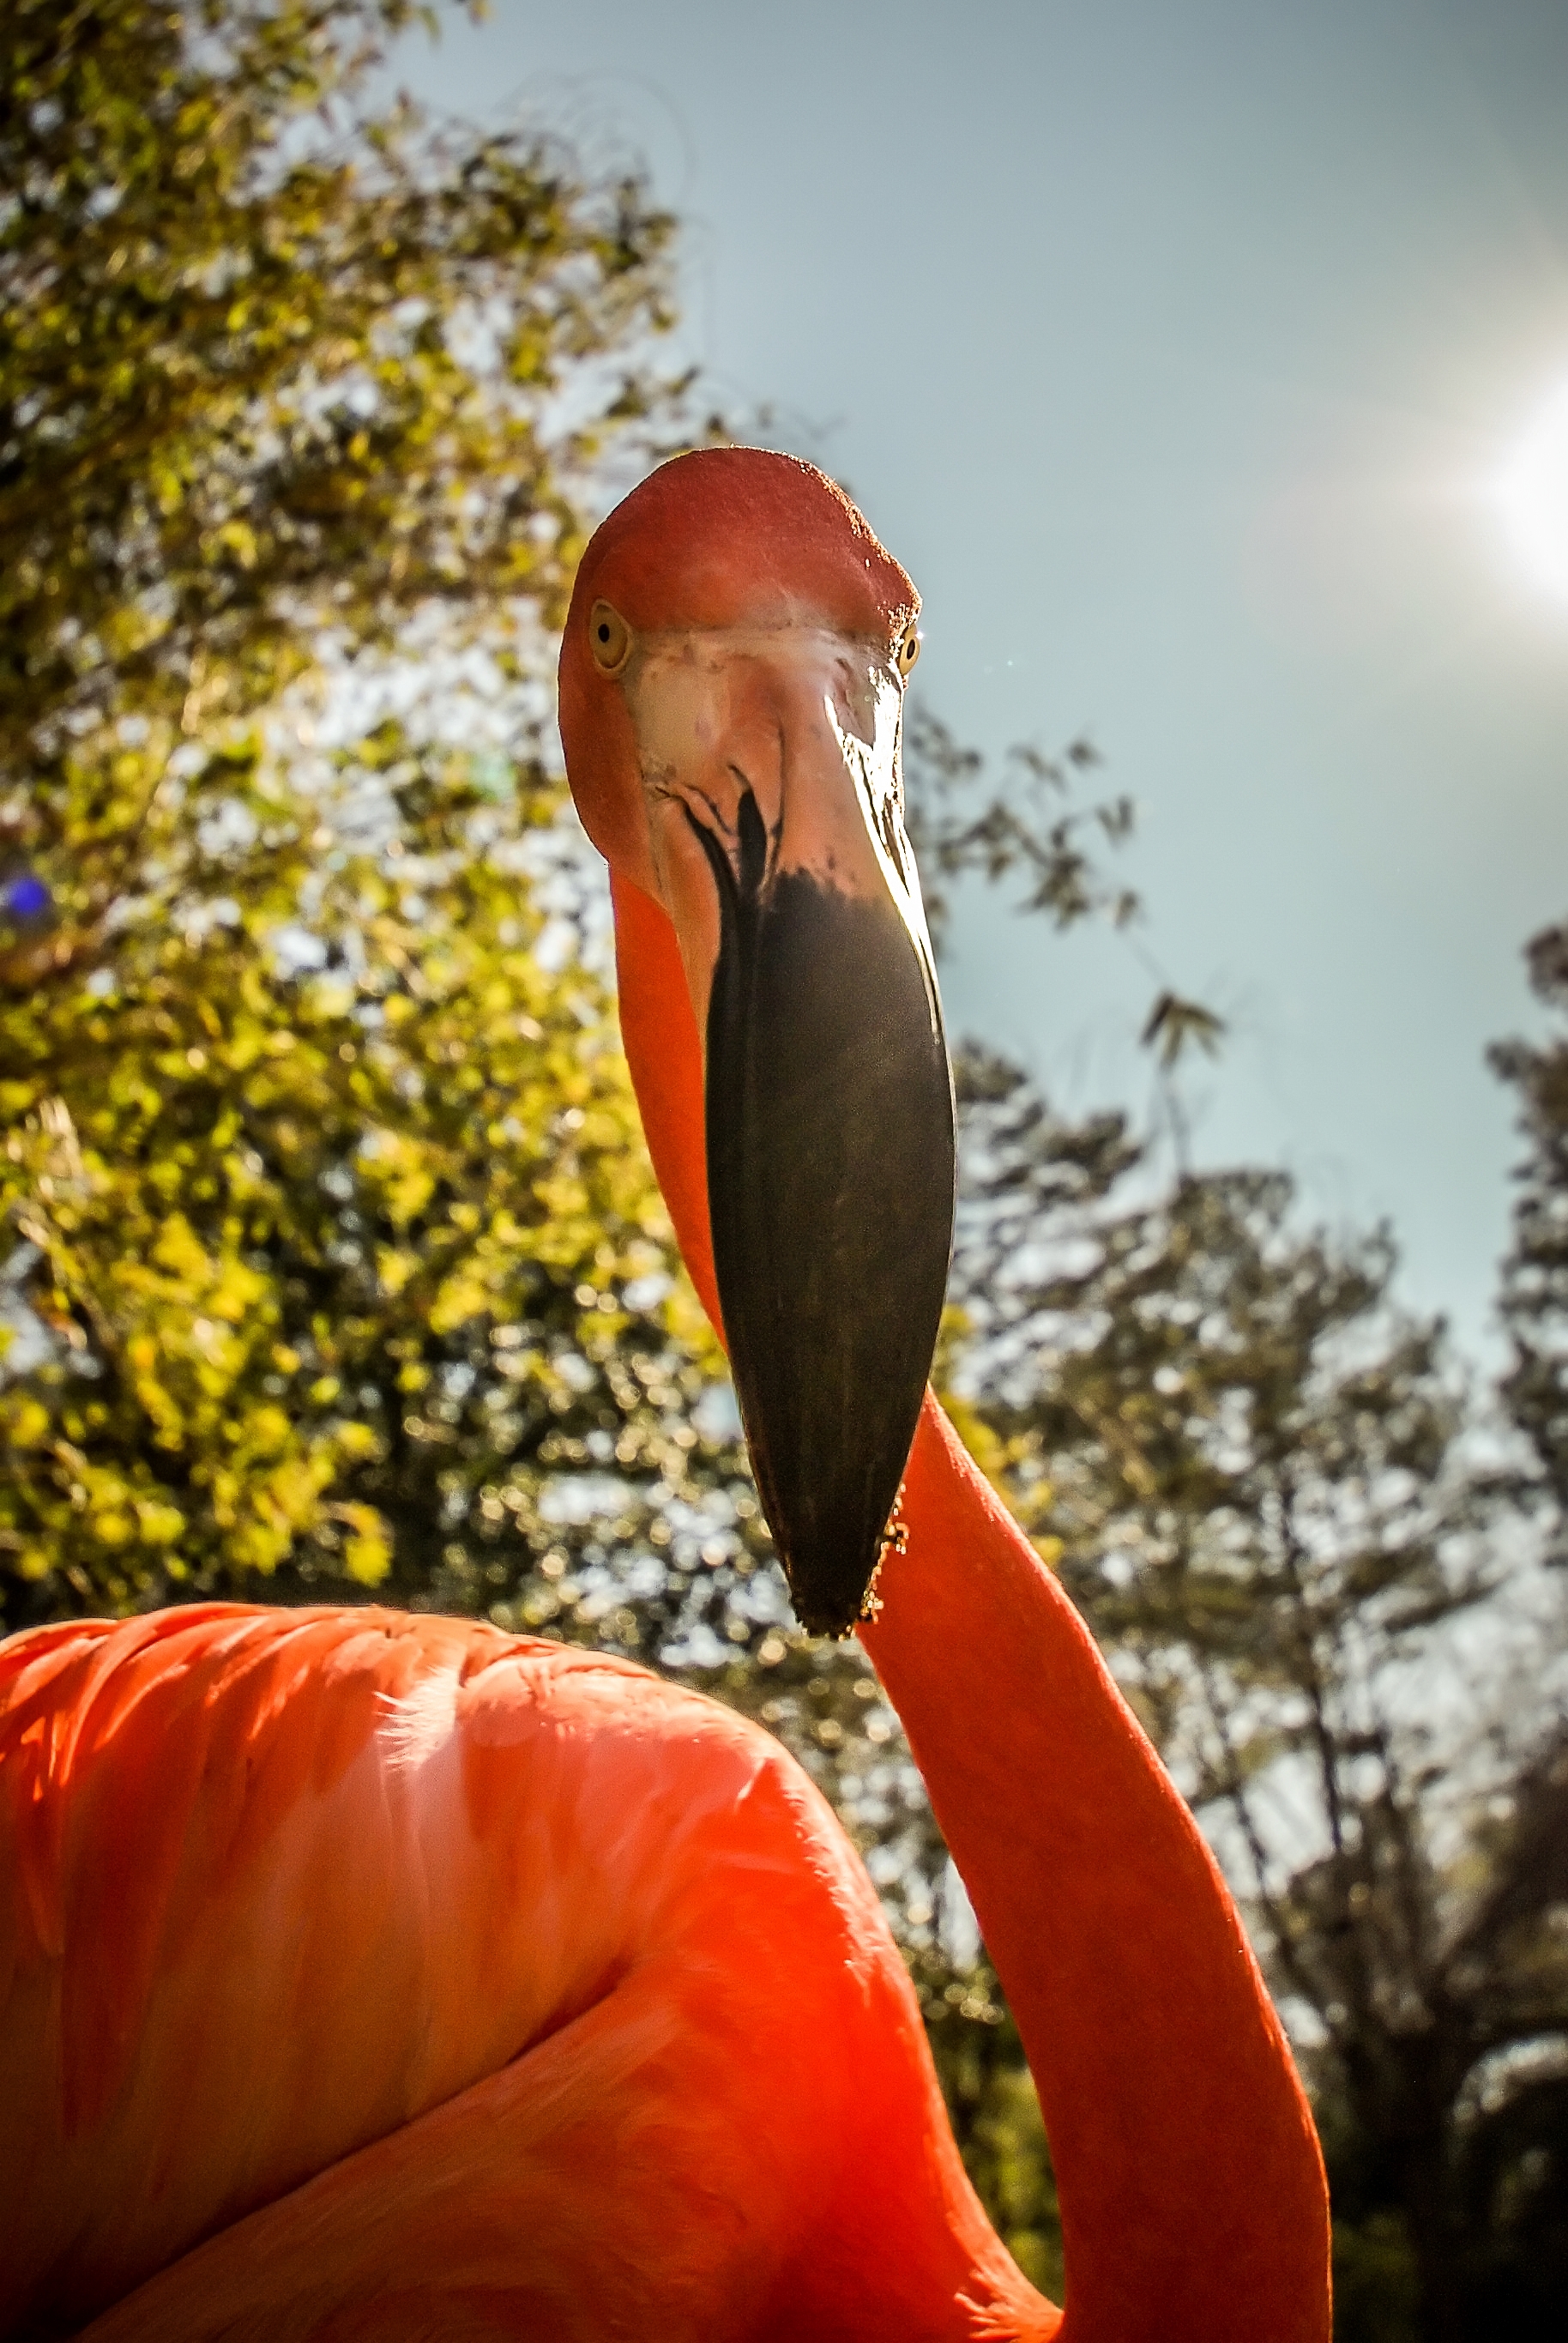 Flamingo, Africa, Scenery, Orange, Ornithology, HQ Photo